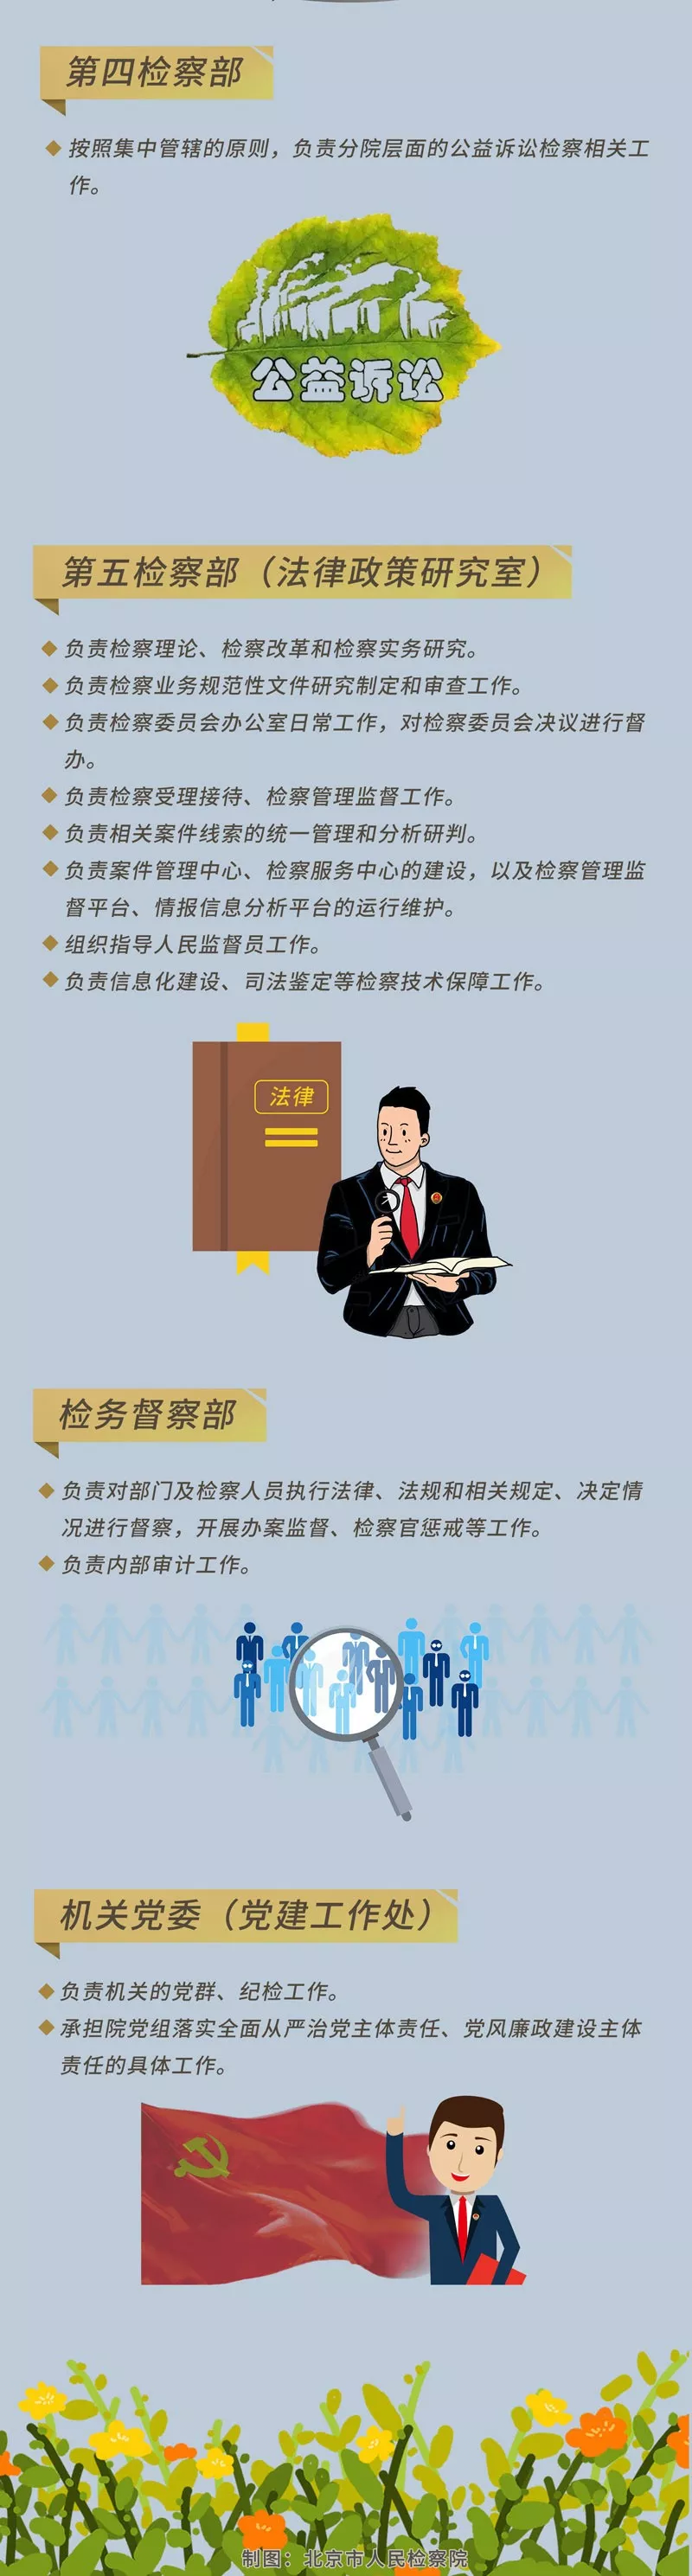 一图读懂 | 北京市人民检察院各分院内设机构设置